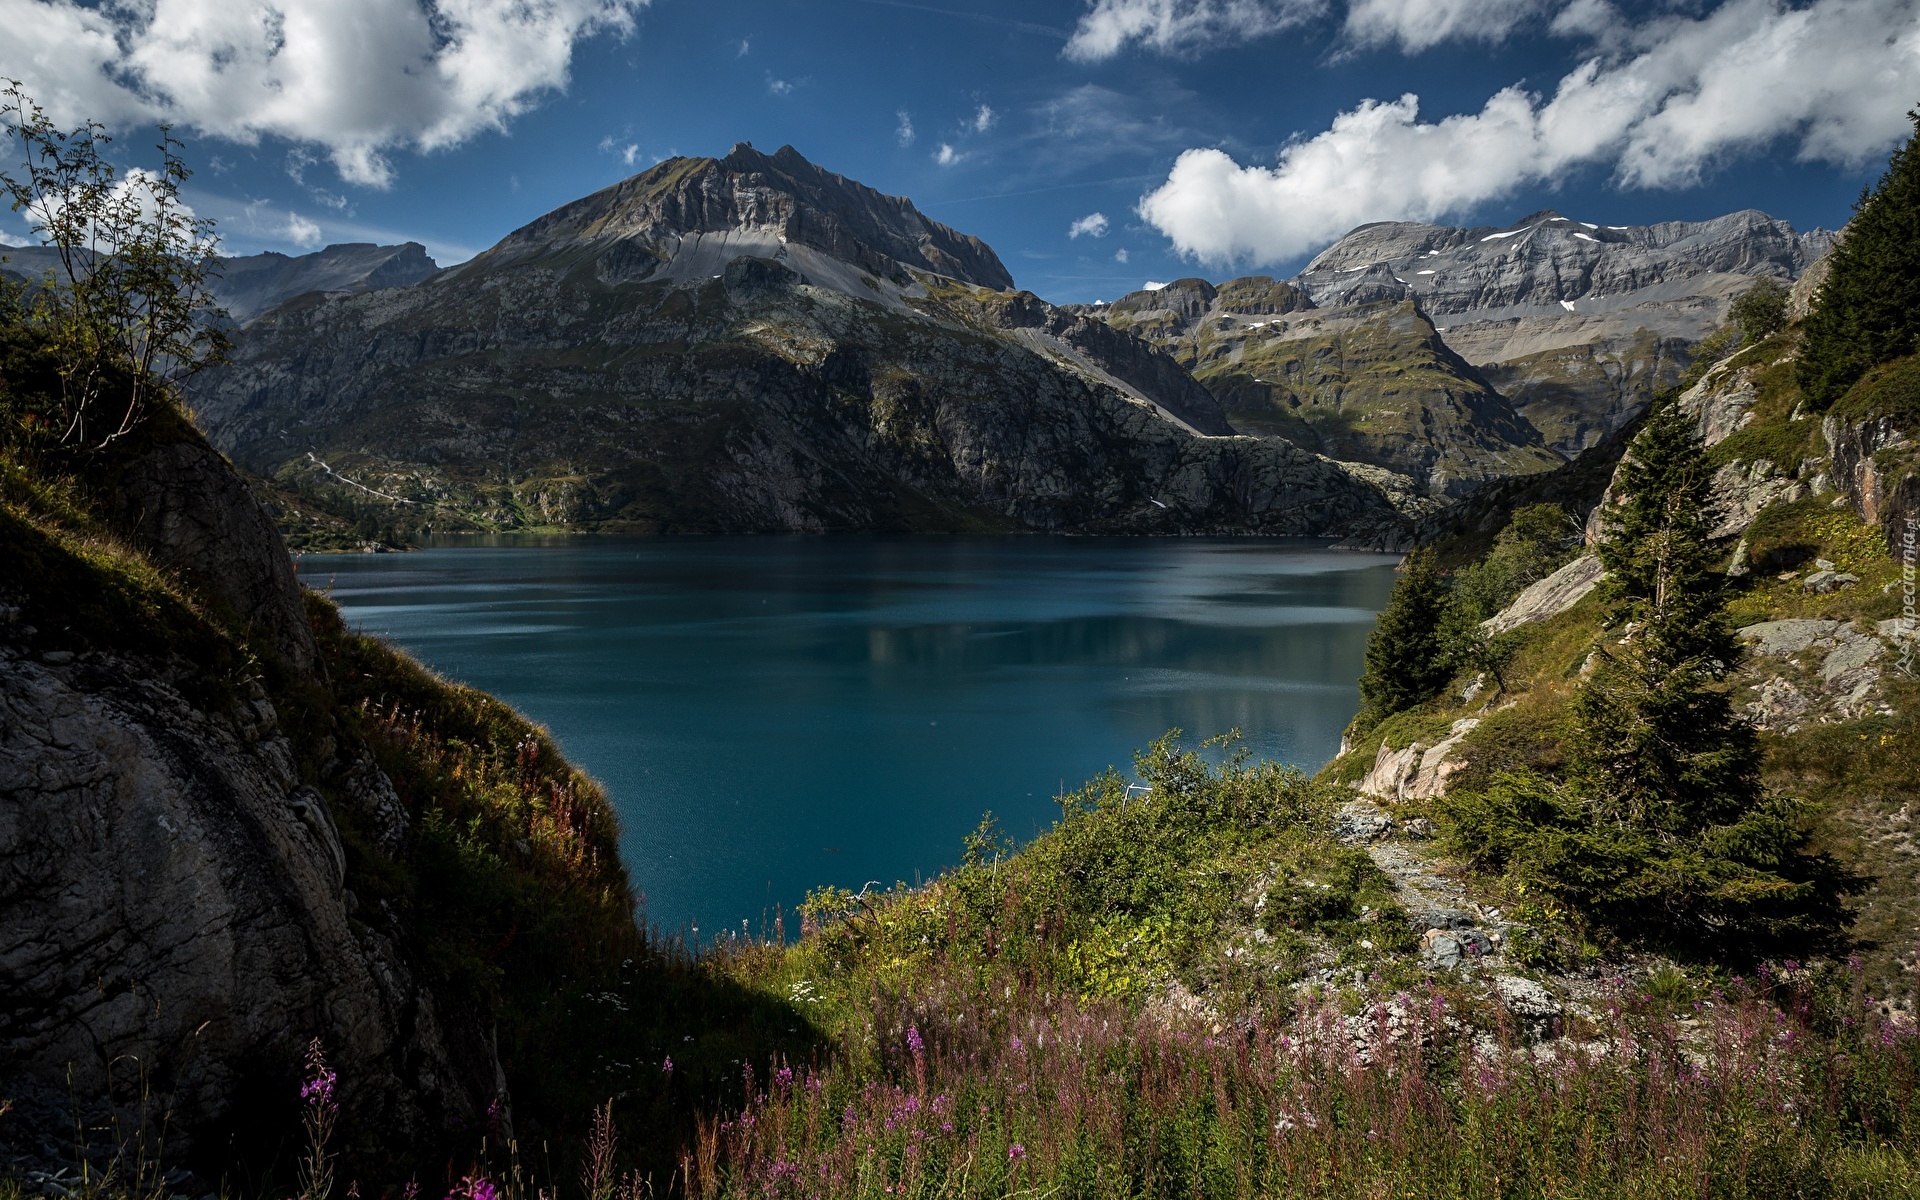 Góry Alpy, Jezioro Lac dEmosson, Świerki, Trawa, Chmury, Kanton Valais, Szwajcaria